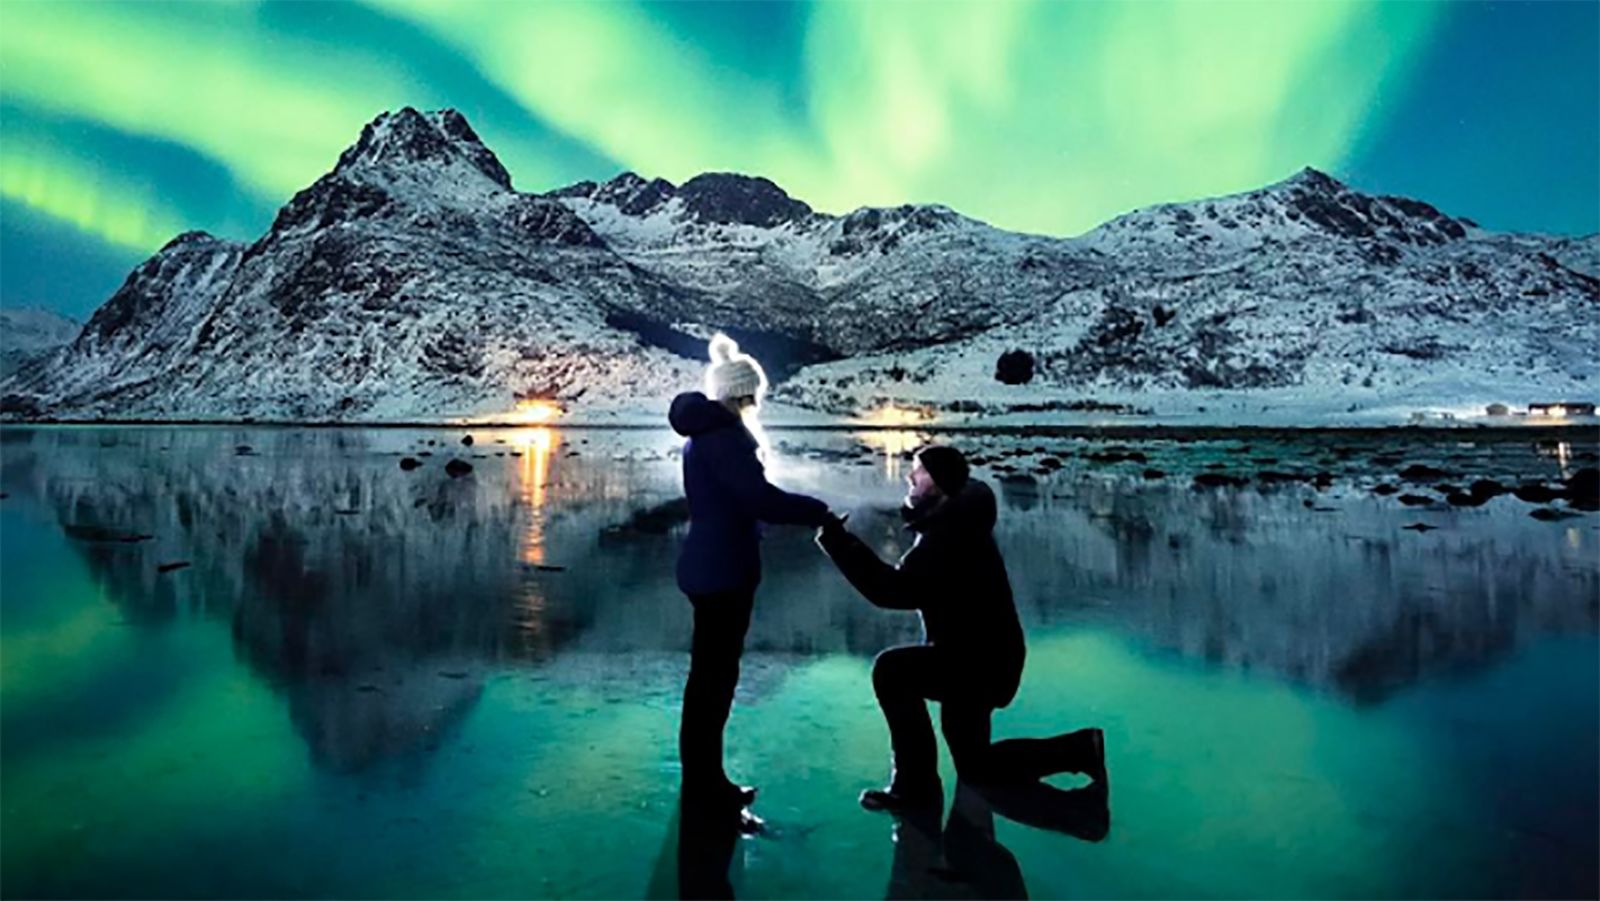 Northern Lights: 11 best aurora borealis | CNN